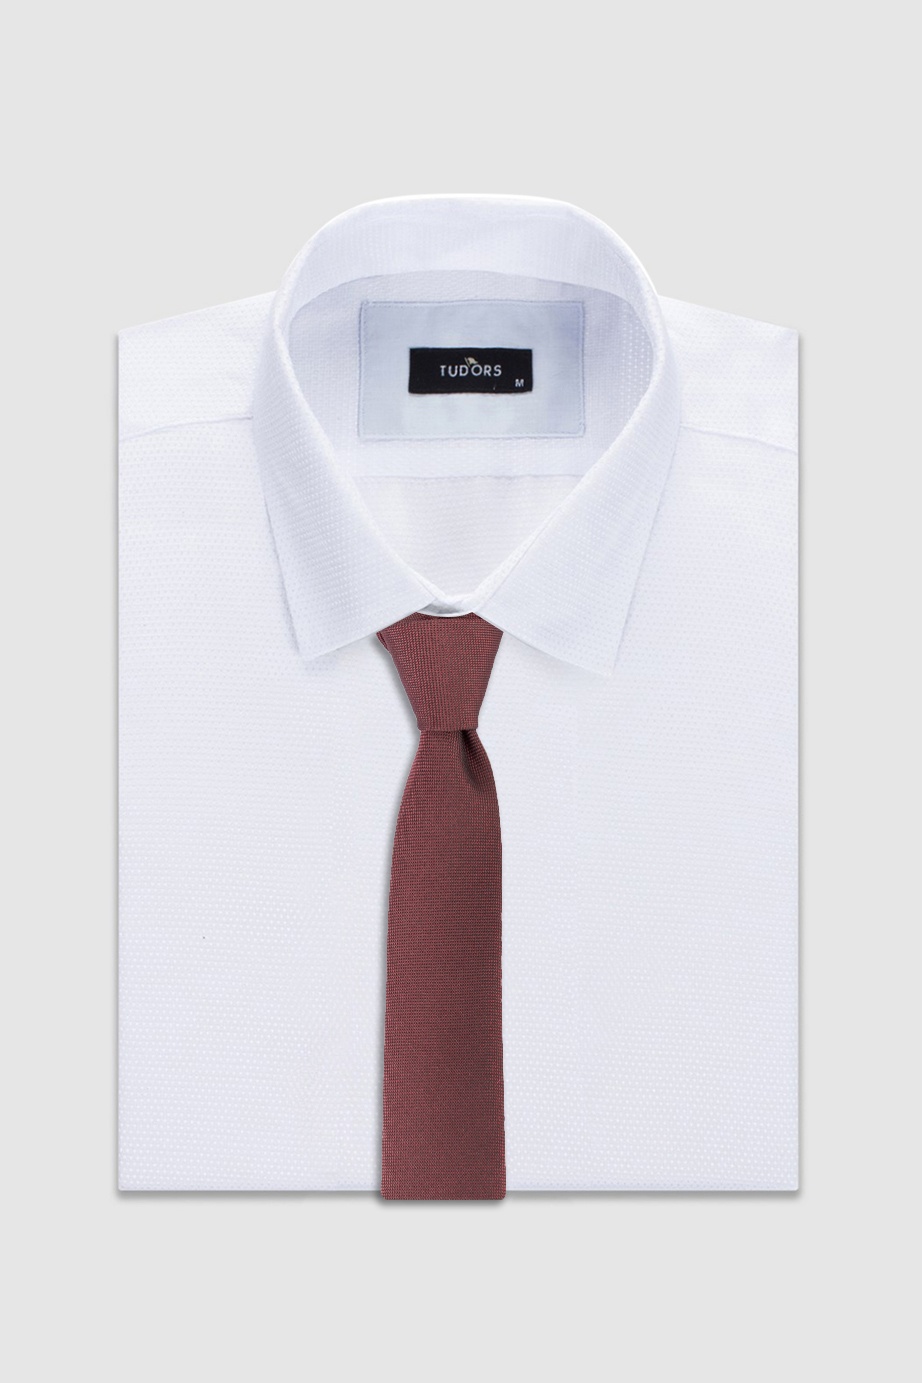 Plain Claret Red Tie